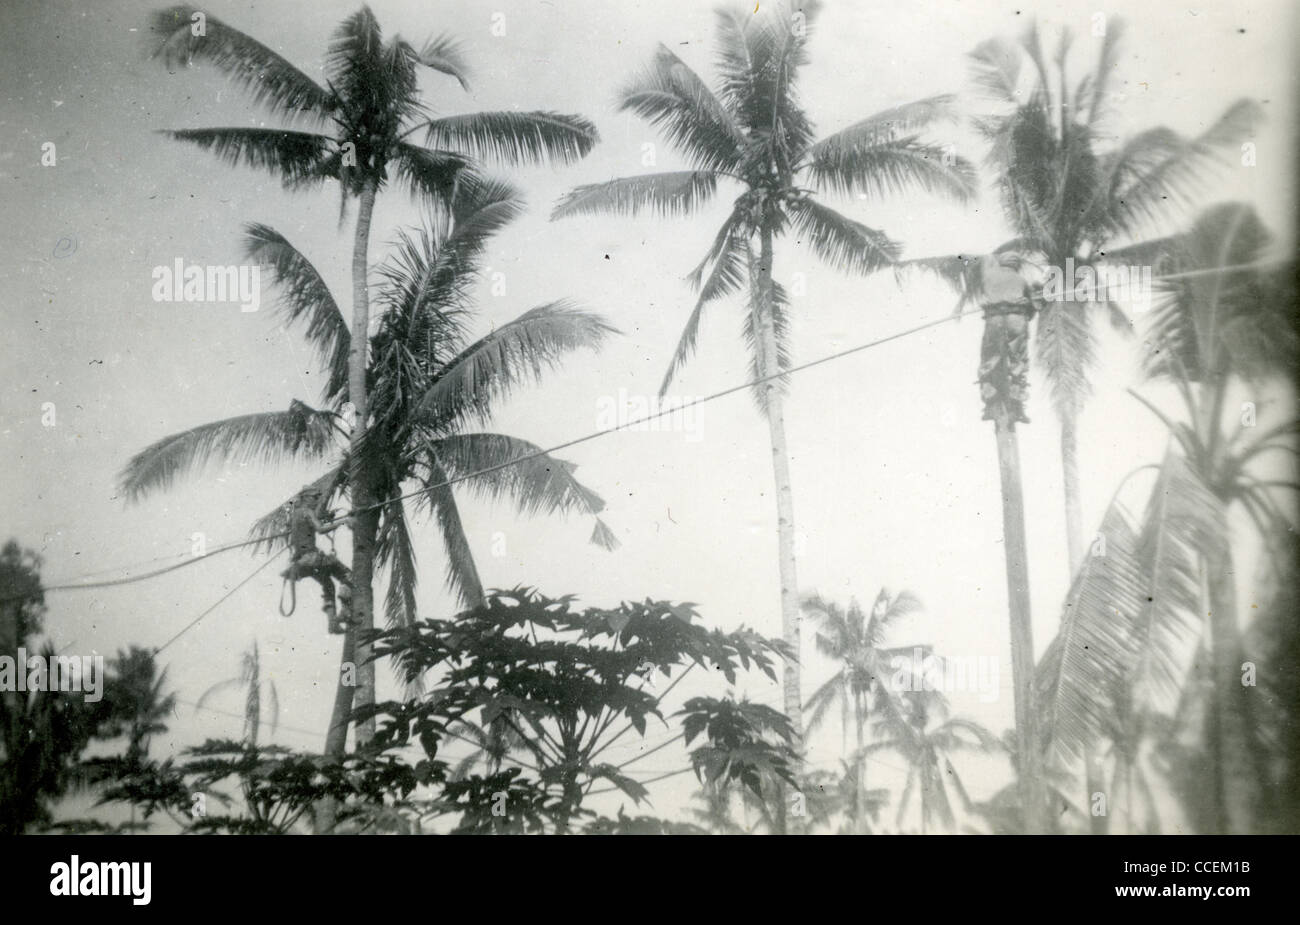 Groupe de travail sur les lignes d'alimentation Seabees à Leyte, aux Philippines pendant la Seconde Guerre mondiale. Banque D'Images